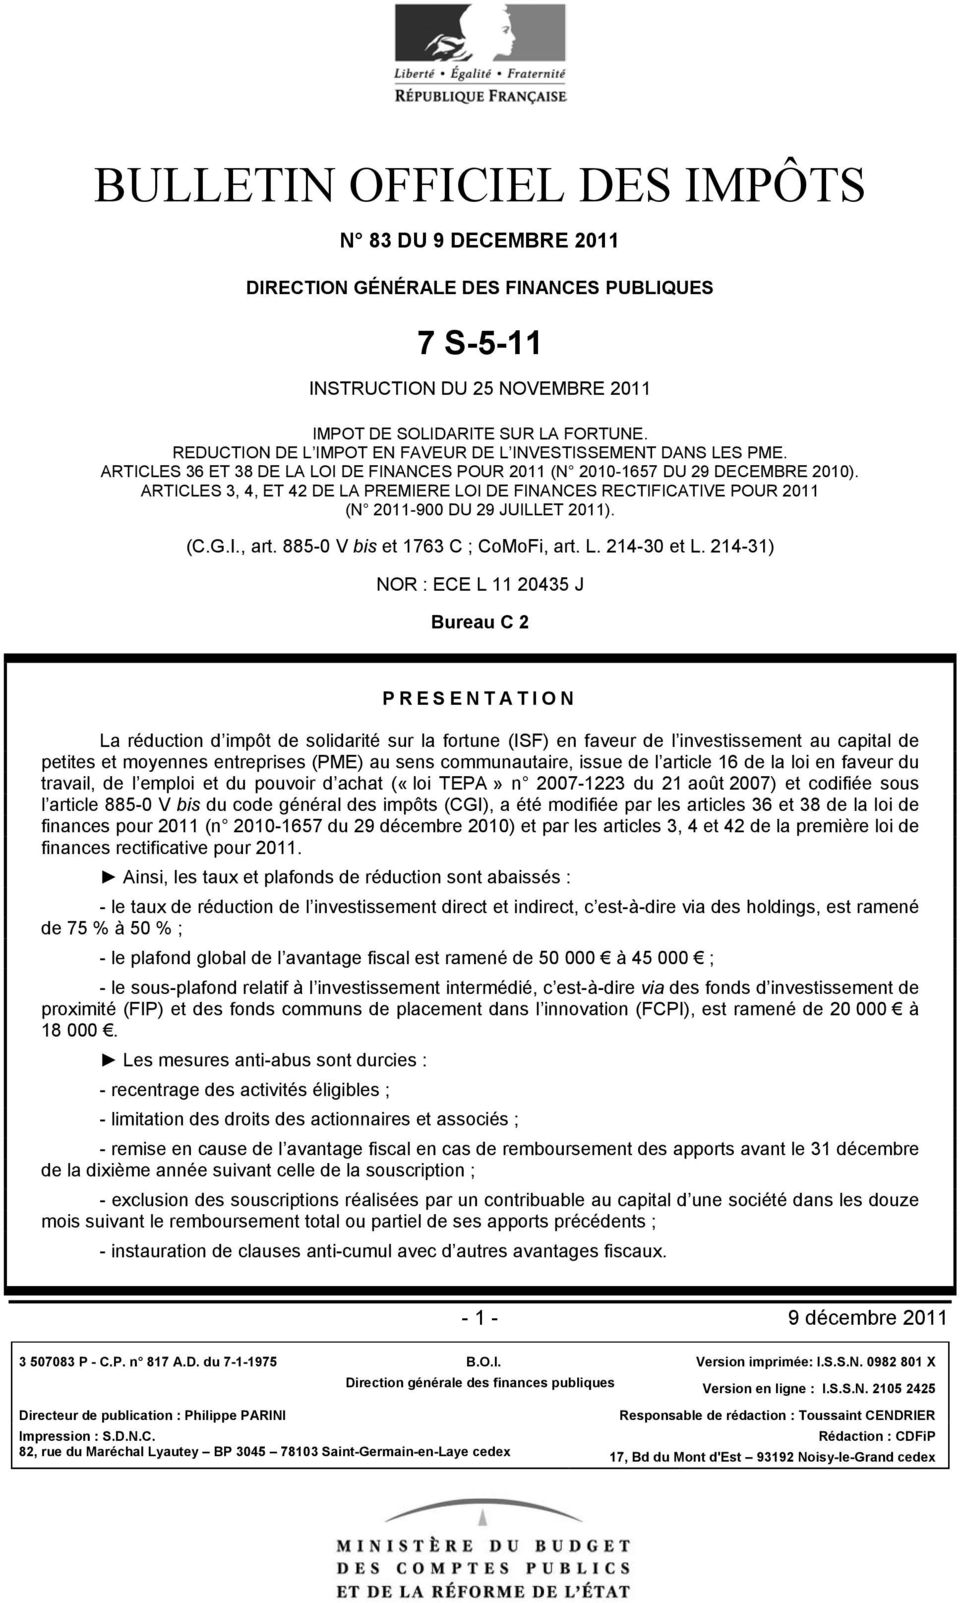 ARTICLES 3, 4, ET 42 DE LA PREMIERE LOI DE FINANCES RECTIFICATIVE POUR 2011 (N 2011-900 DU 29 JUILLET 2011). (C.G.I., art. 885-0 V bis et 1763 C ; CoMoFi, art. L. 214-30 et L.